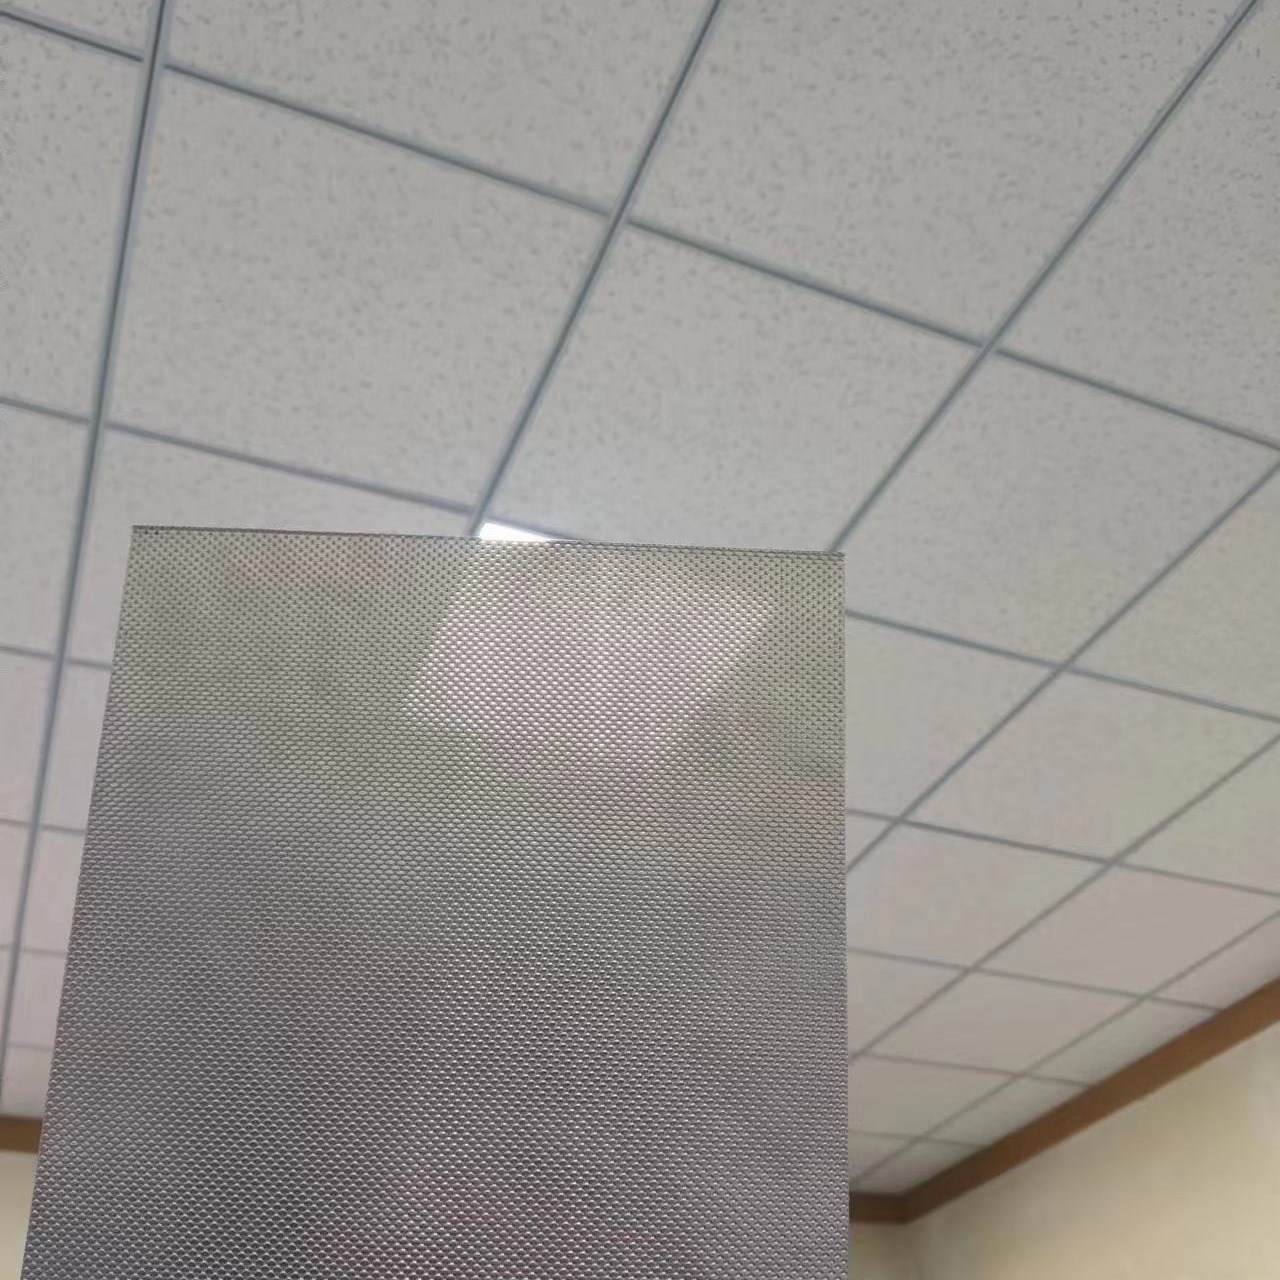 超微孔铝板 密孔铝单板 冲孔铝板孔规格尺寸可定制